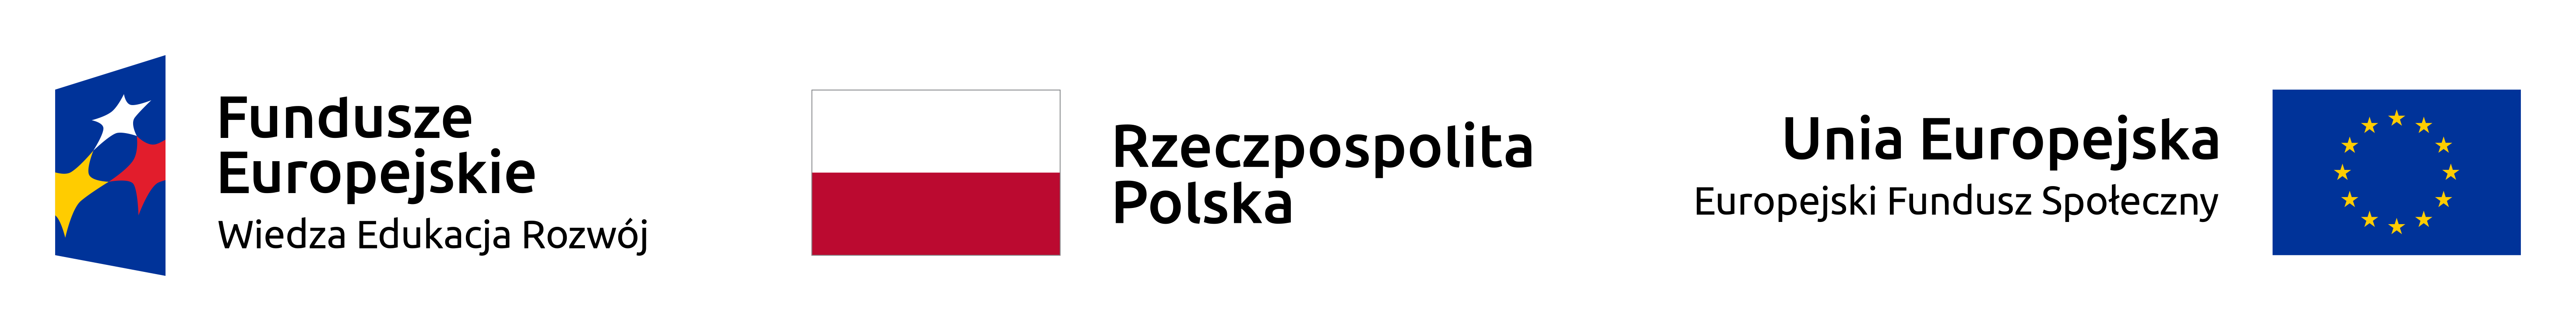 Obrazek -Logo Uni Europejskiej, logo Funfuszy strukturalnych